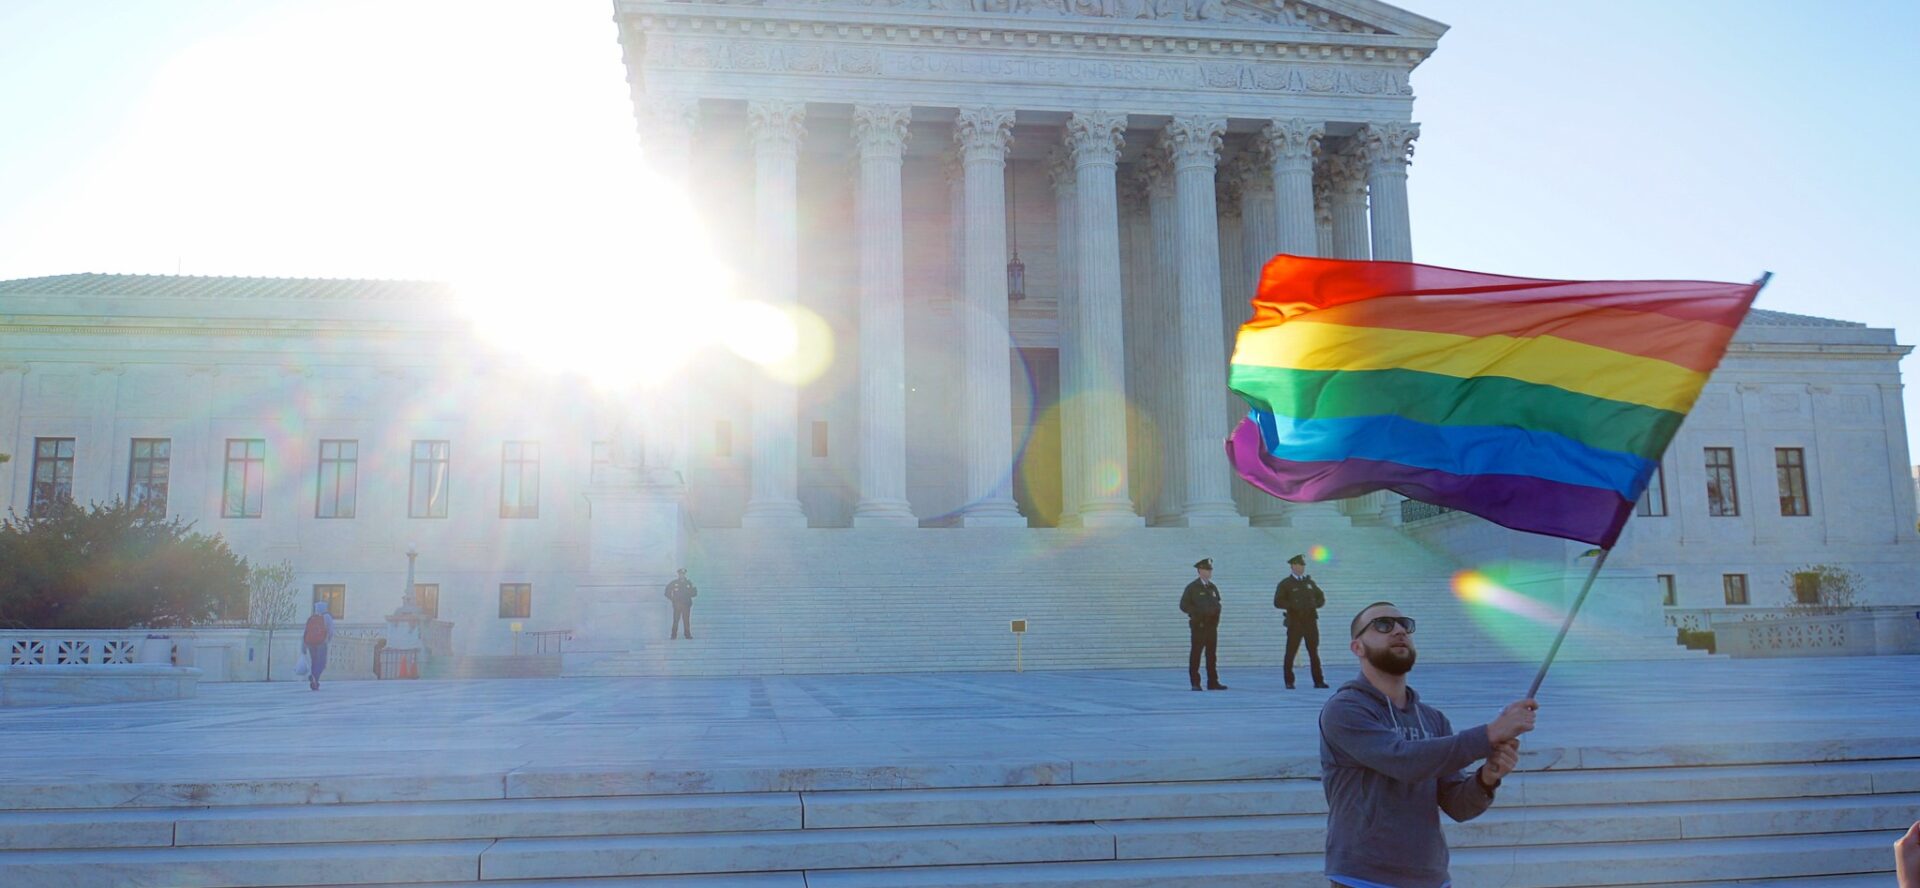 Les milieux pro-LGBTQ aux Etats-Unis veulent protéger les droits des couples homosexuels | © Ted Eytan/Flickr/CC BY-SA 2.0